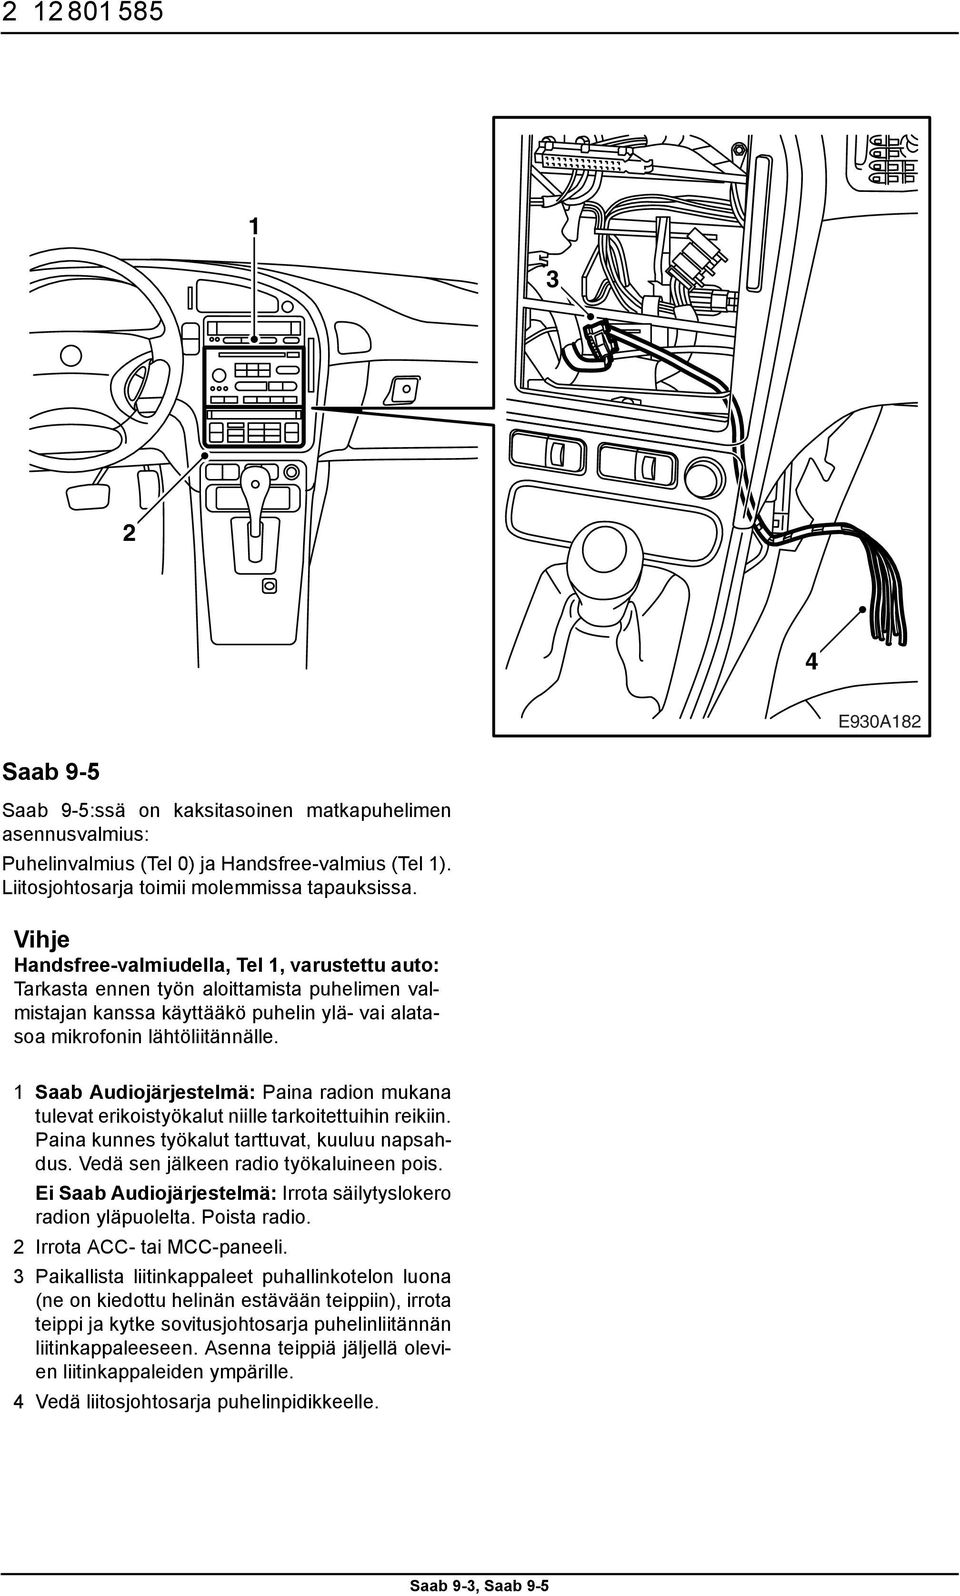 1 Saab Audiojärjestelmä: Paina radion mukana tulevat erikoistyökalut niille tarkoitettuihin reikiin. Paina kunnes työkalut tarttuvat, kuuluu napsahdus. Vedä sen jälkeen radio työkaluineen pois.